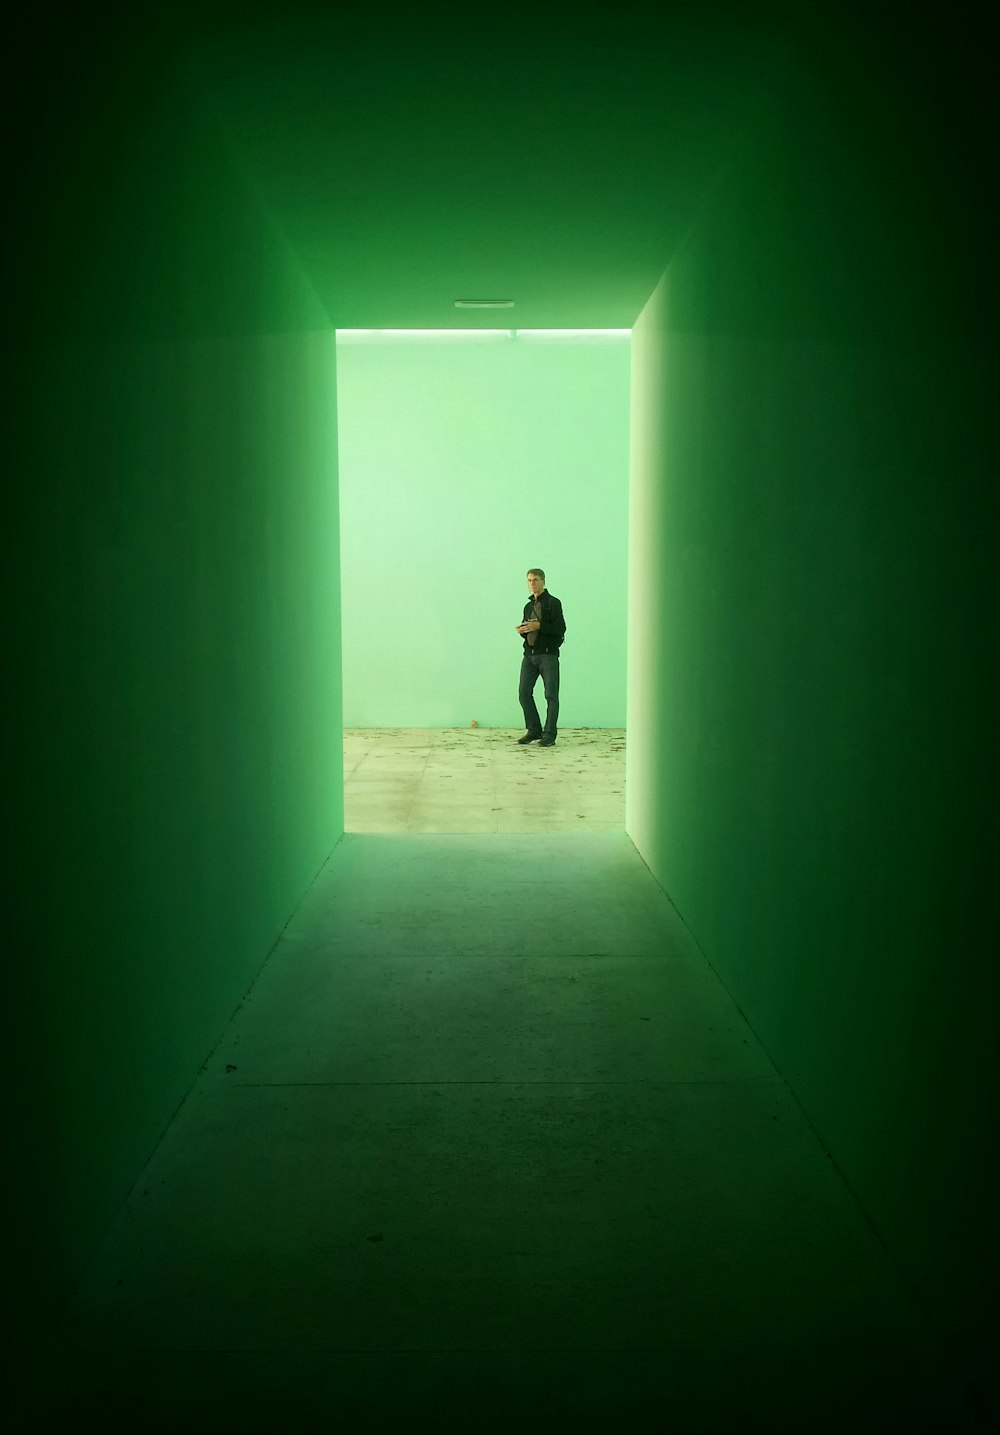 검은 재킷을 입은 남자가 녹색 벽 근처에 서 있습니다.